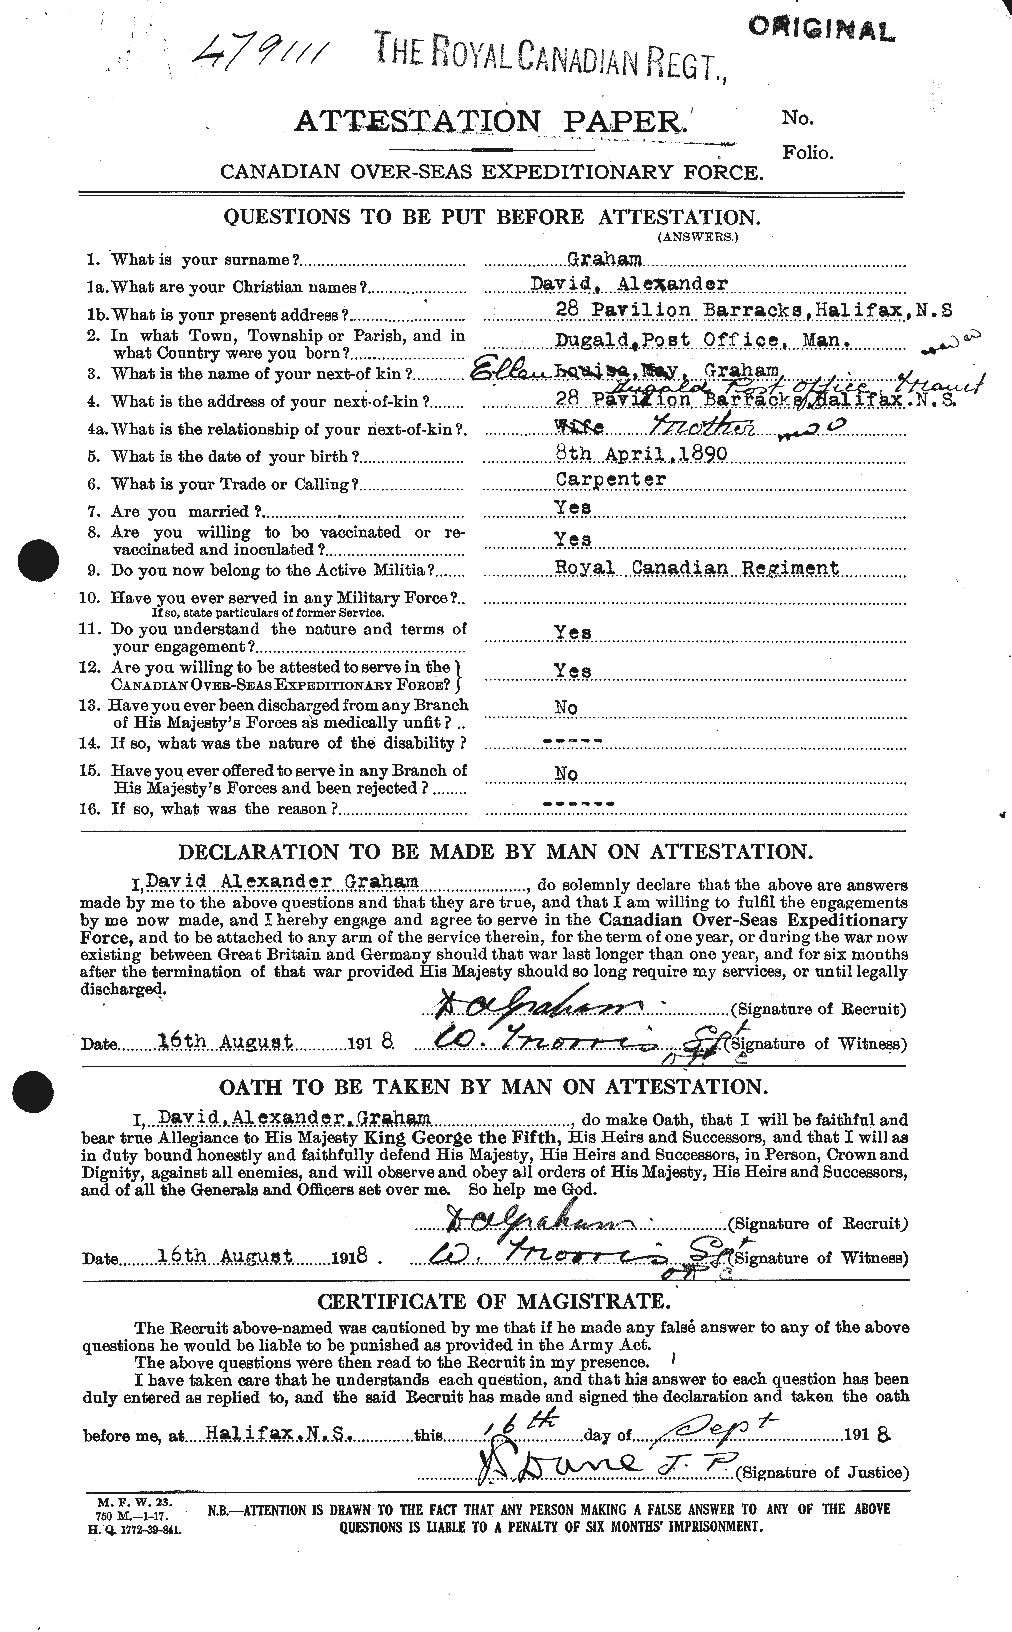 Dossiers du Personnel de la Première Guerre mondiale - CEC 353824a